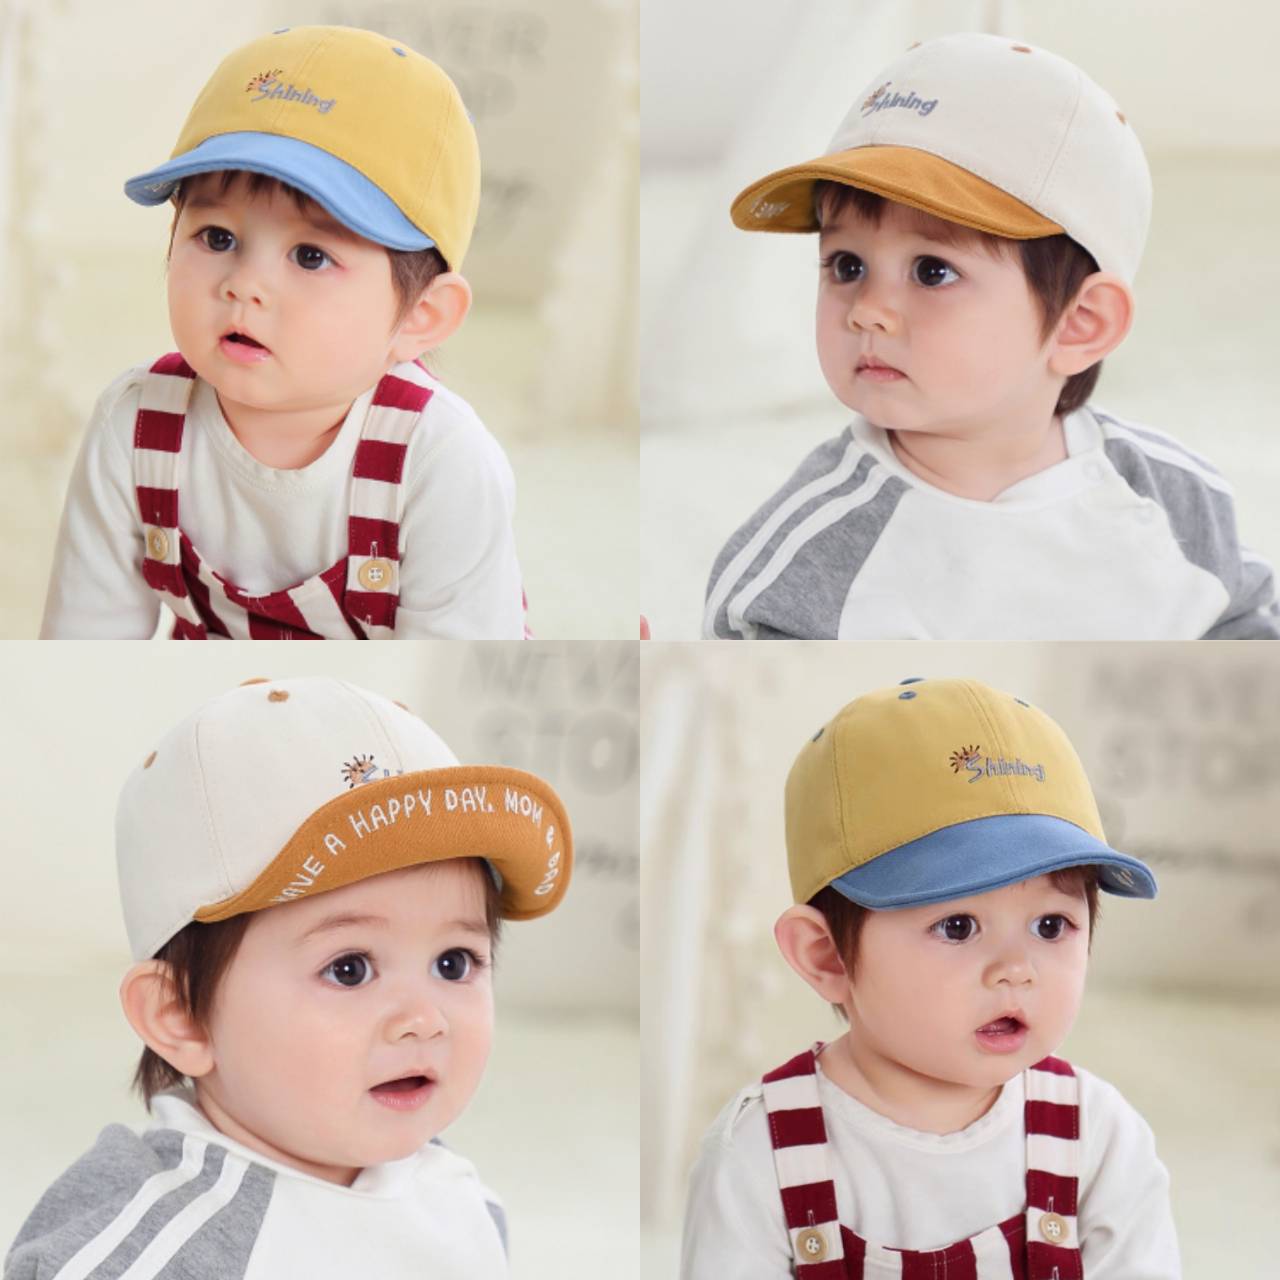 ☆พร้อมส่ง☆หมวกเด็ก 6เดือน-3ปี หมวกเด็กอ่อน หมวกแก็ปเด็ก หมวกแก็ปปีกอ่อน หมวกเด็กผู้ชาย หมวกเด็กผู้หญิง หมวกแฟชั่น ปัก Shining รอบหัว:49-51 cm.